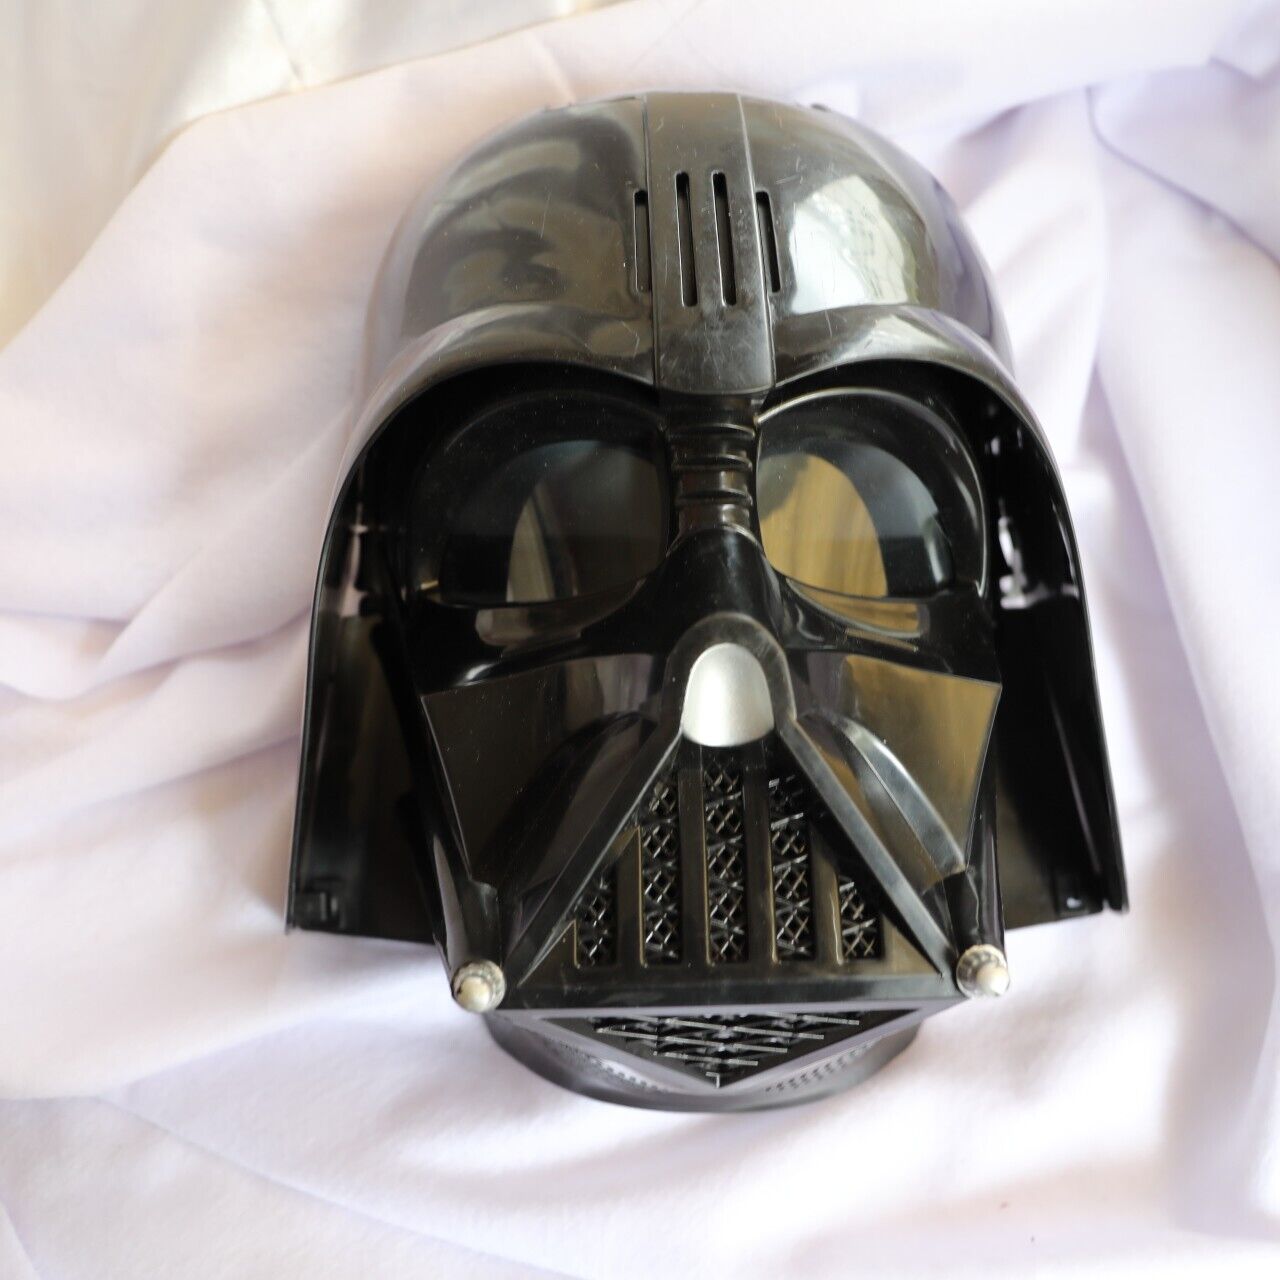 2013 Hasbro Star Wars DARTH VADER Talking Voice Helmet Mask-Works